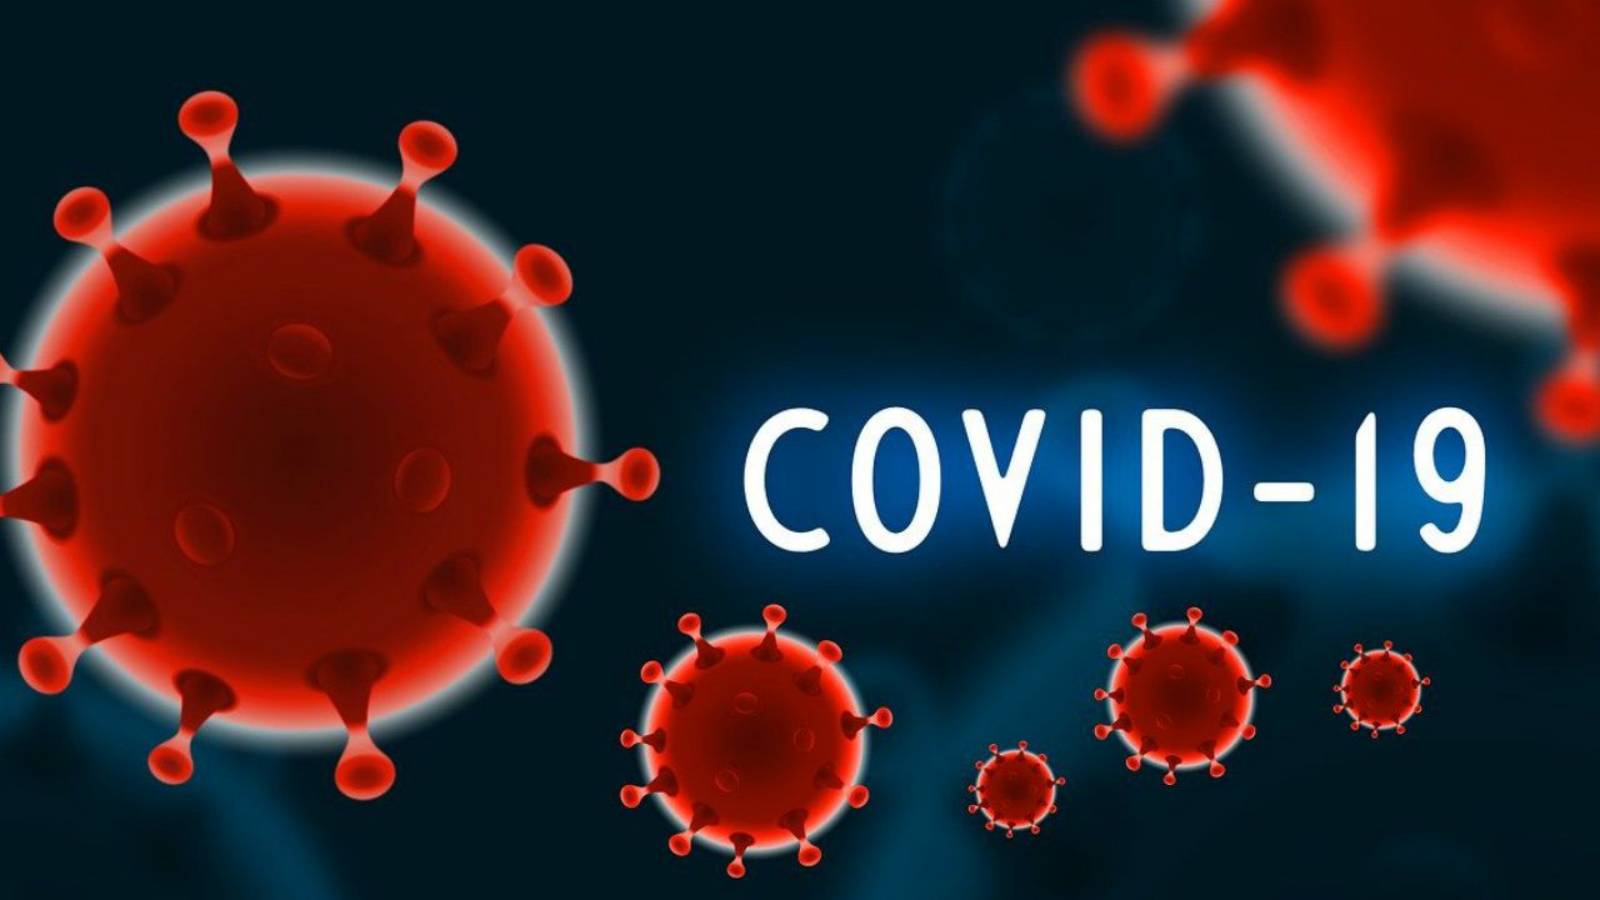 COVID-19 Romanian haittavaikutukset kirjattu rokote